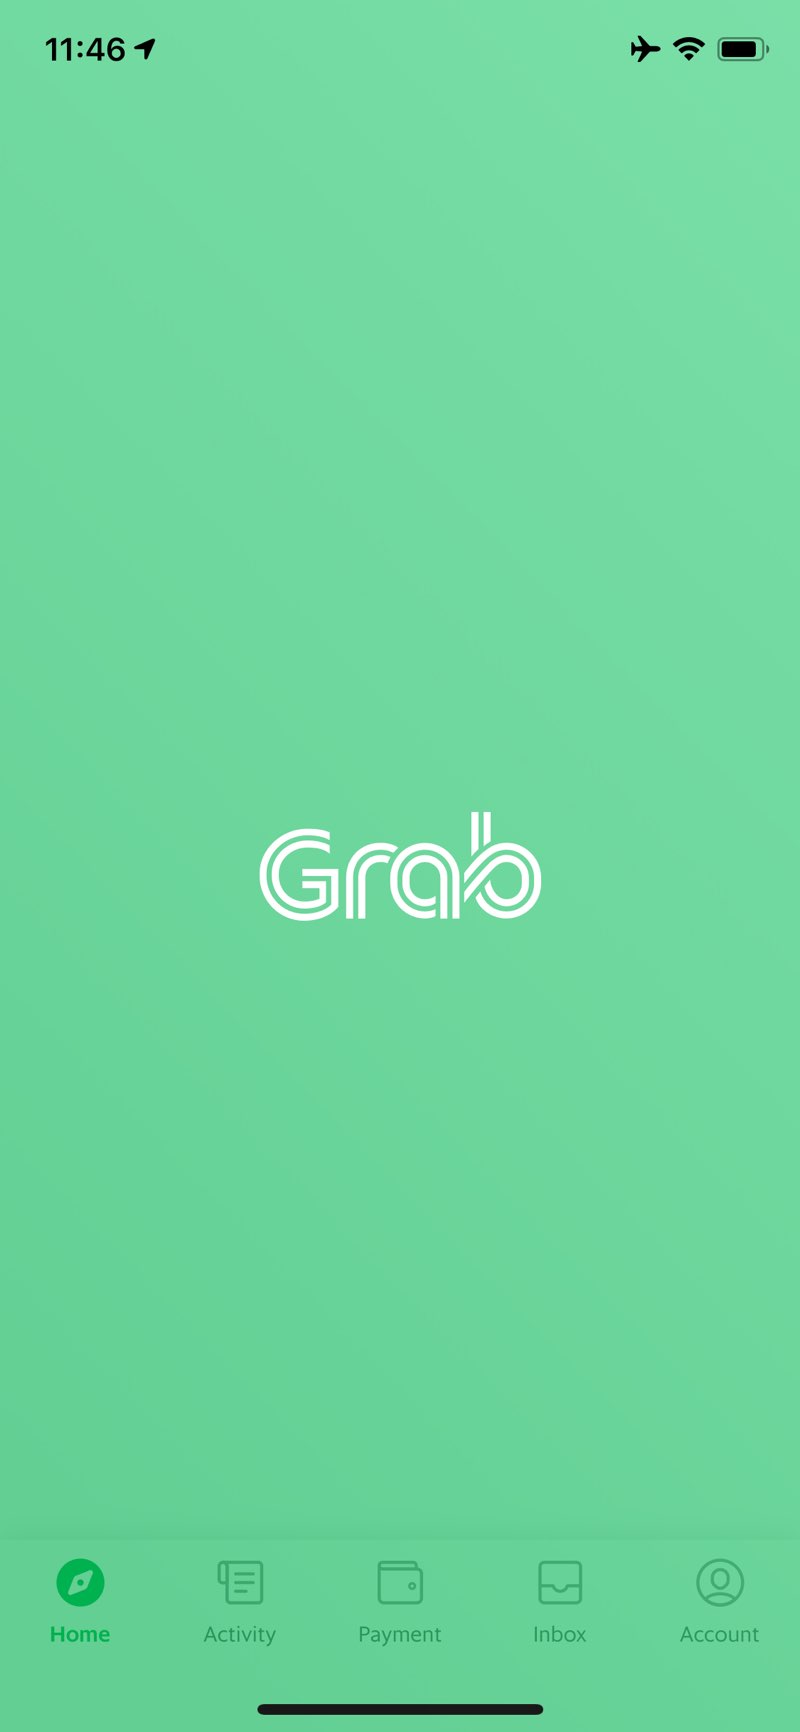 「Grab」の画面